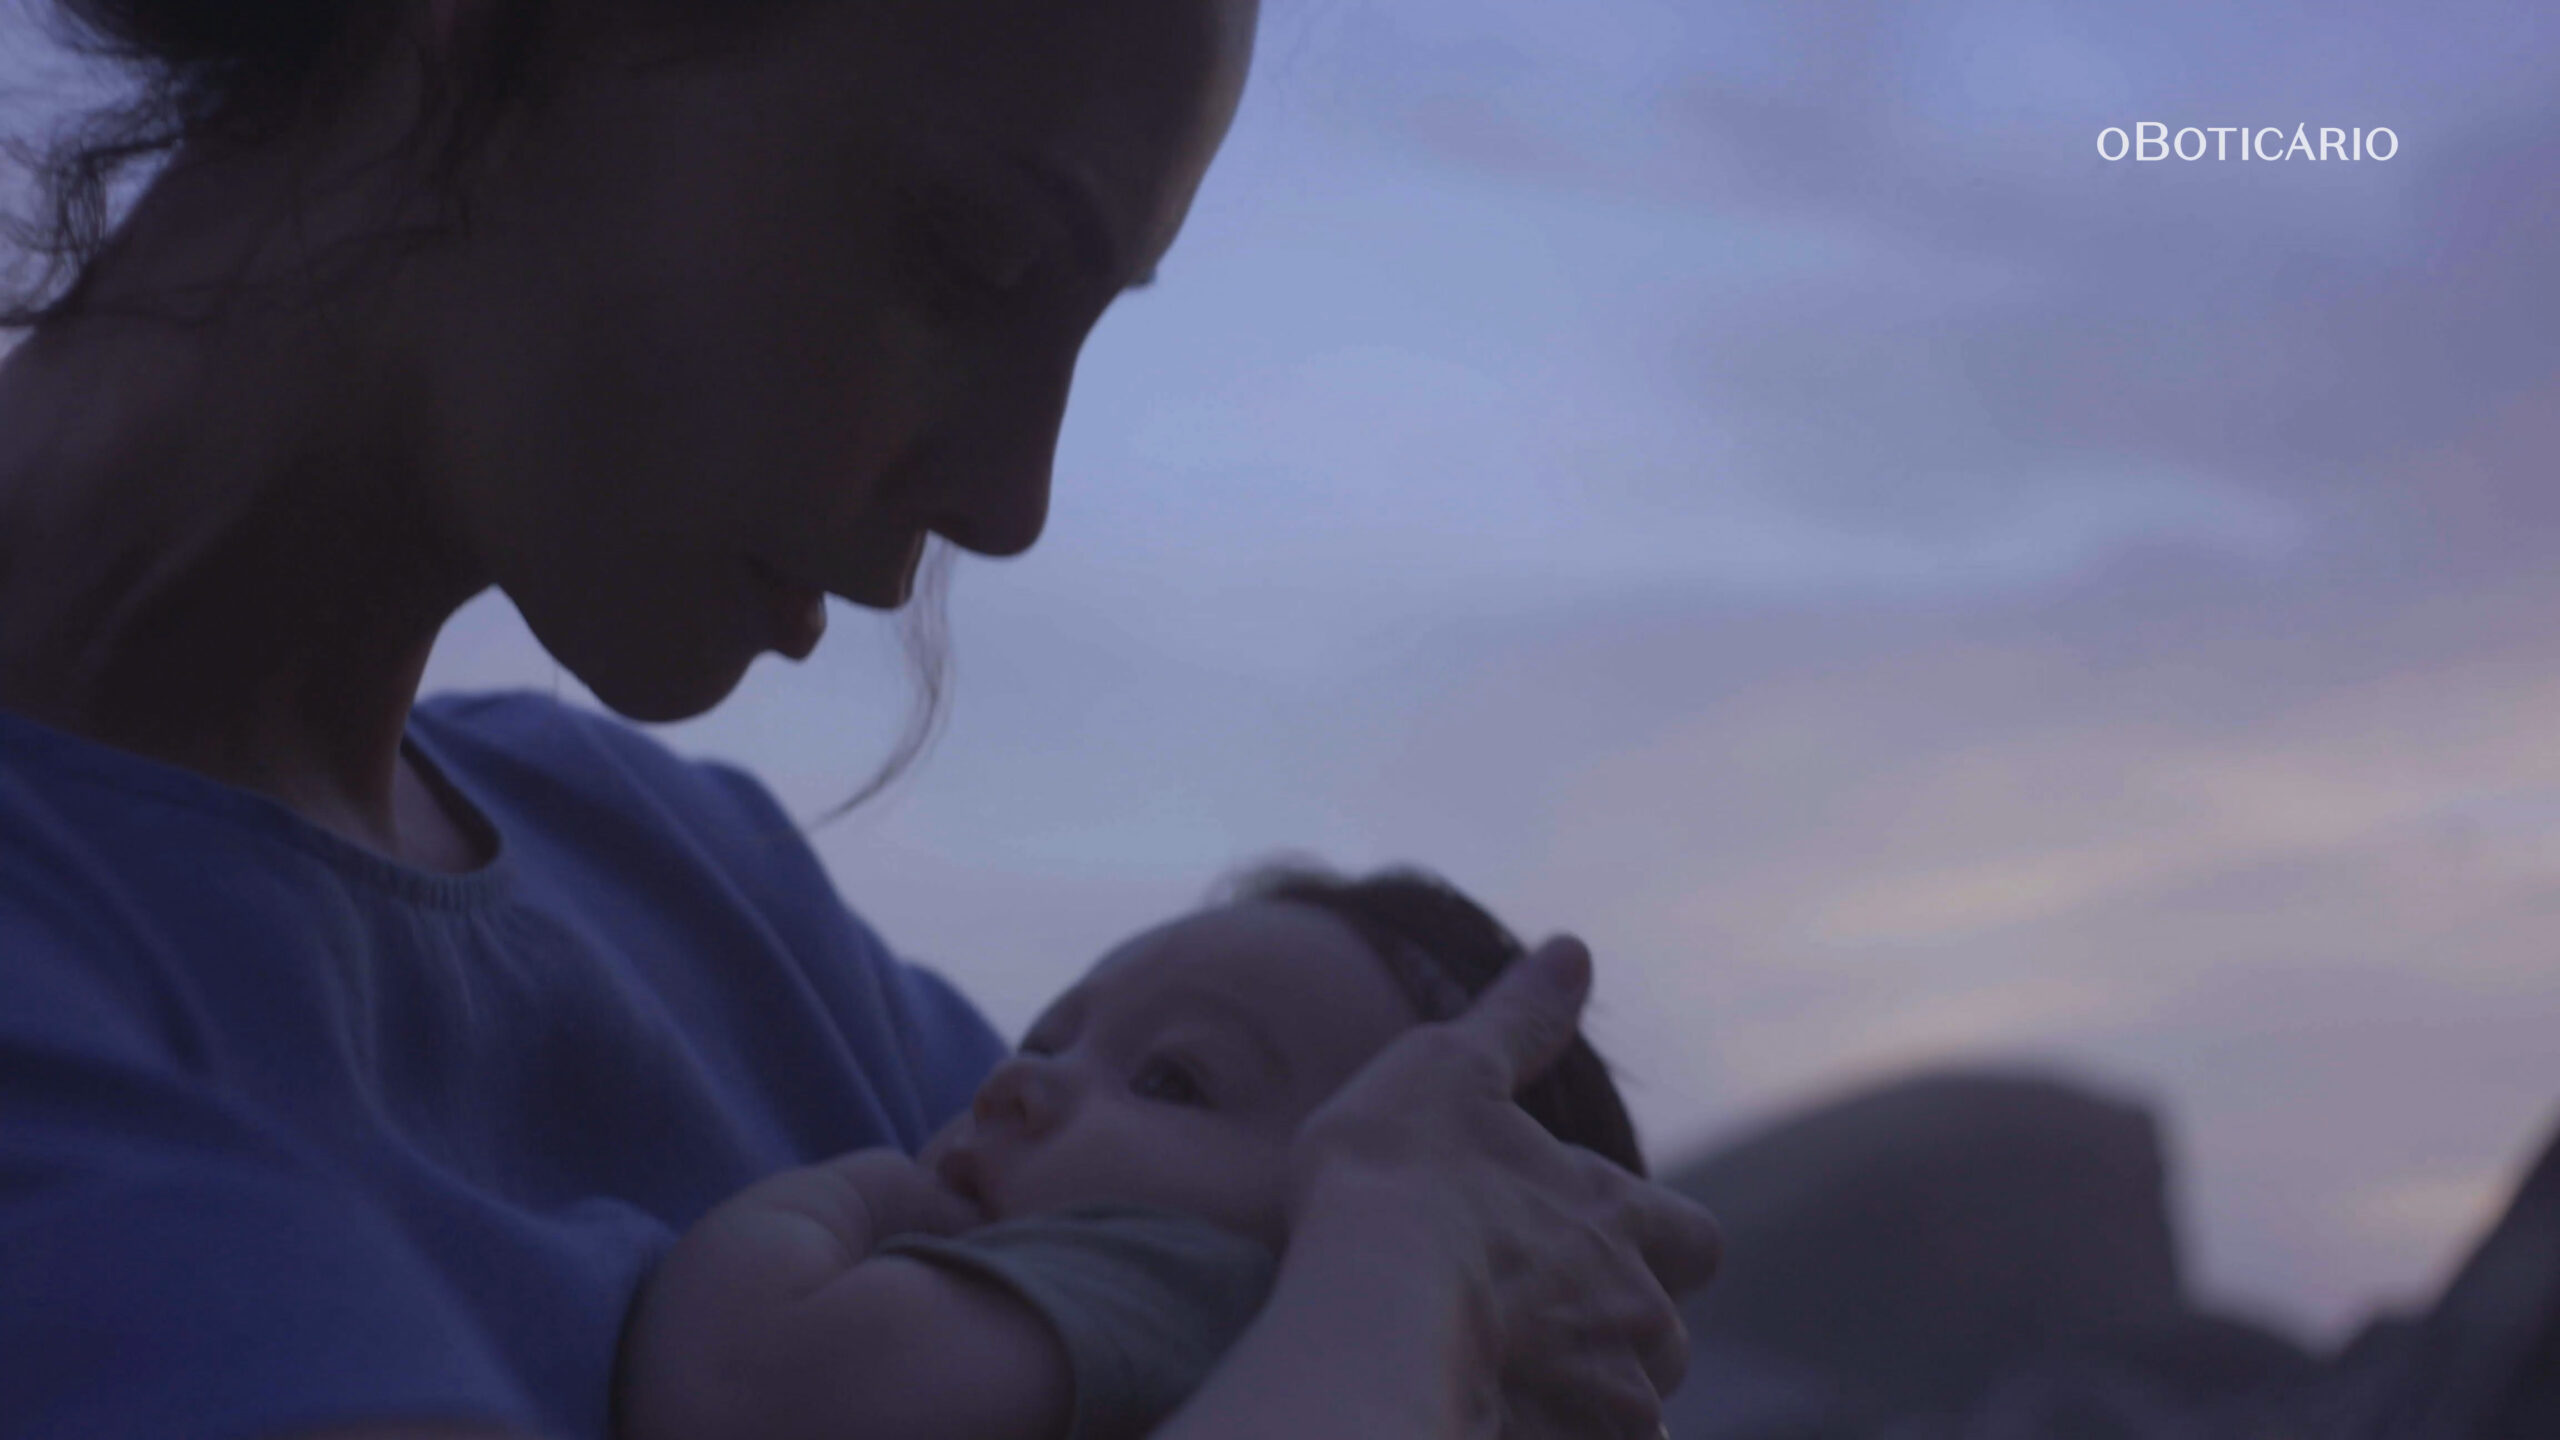 Em campanha de Dia das Mães, o Boticário evidencia a jornada desafiadora da maternidade e propõe reflexão sobre o esgotamento materno